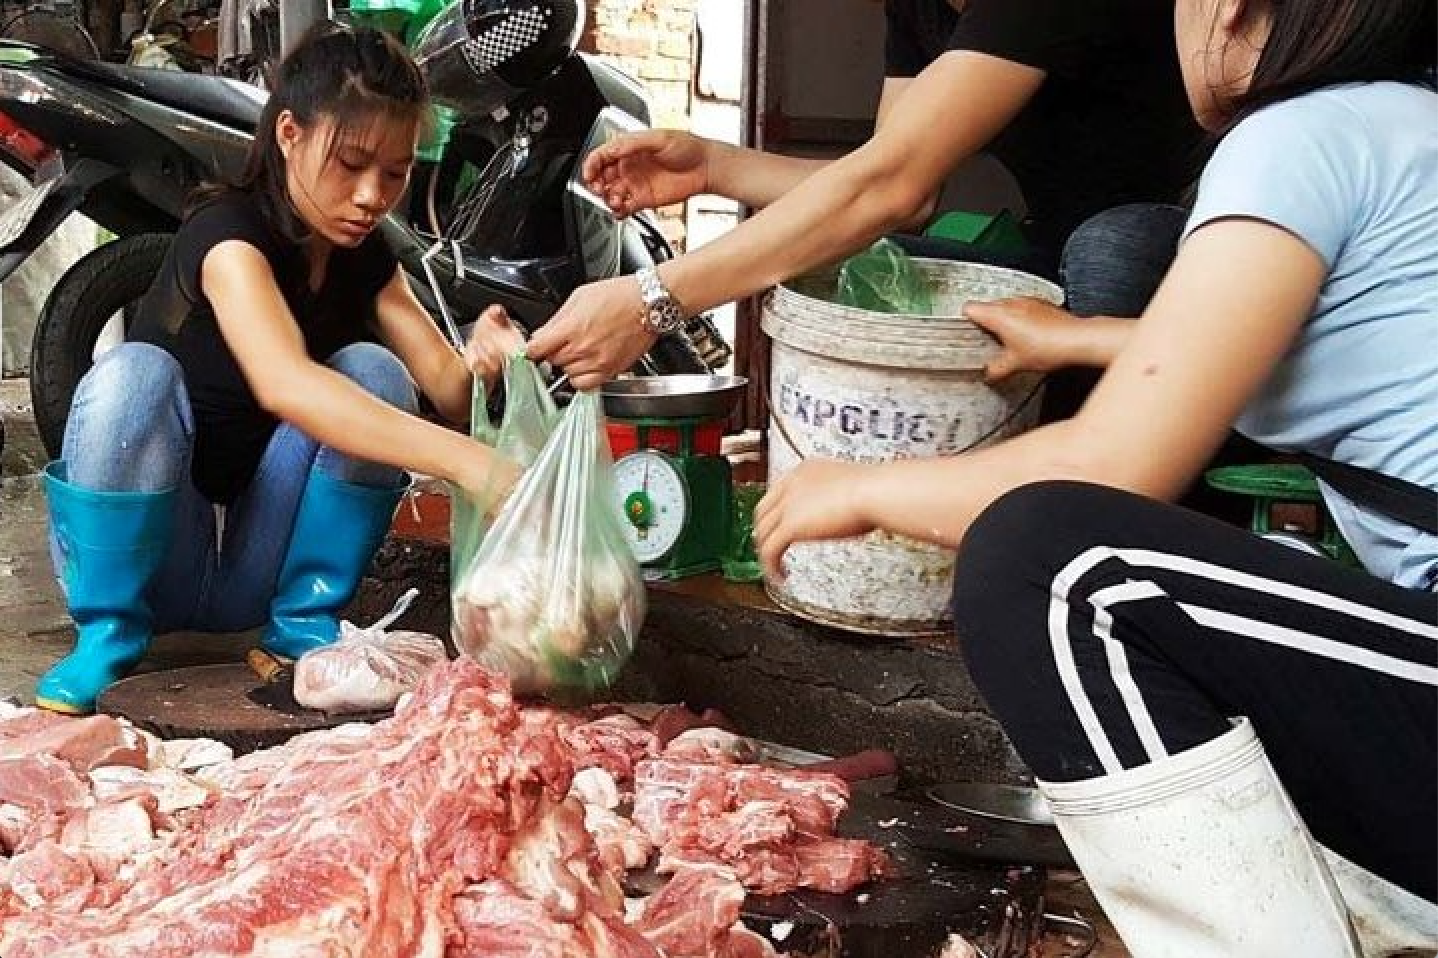 Chi phí sinh hoạt tại Việt Nam: Hình ảnh người bán thịt để thịt sống dưới mặt đất mất vệ sinh.